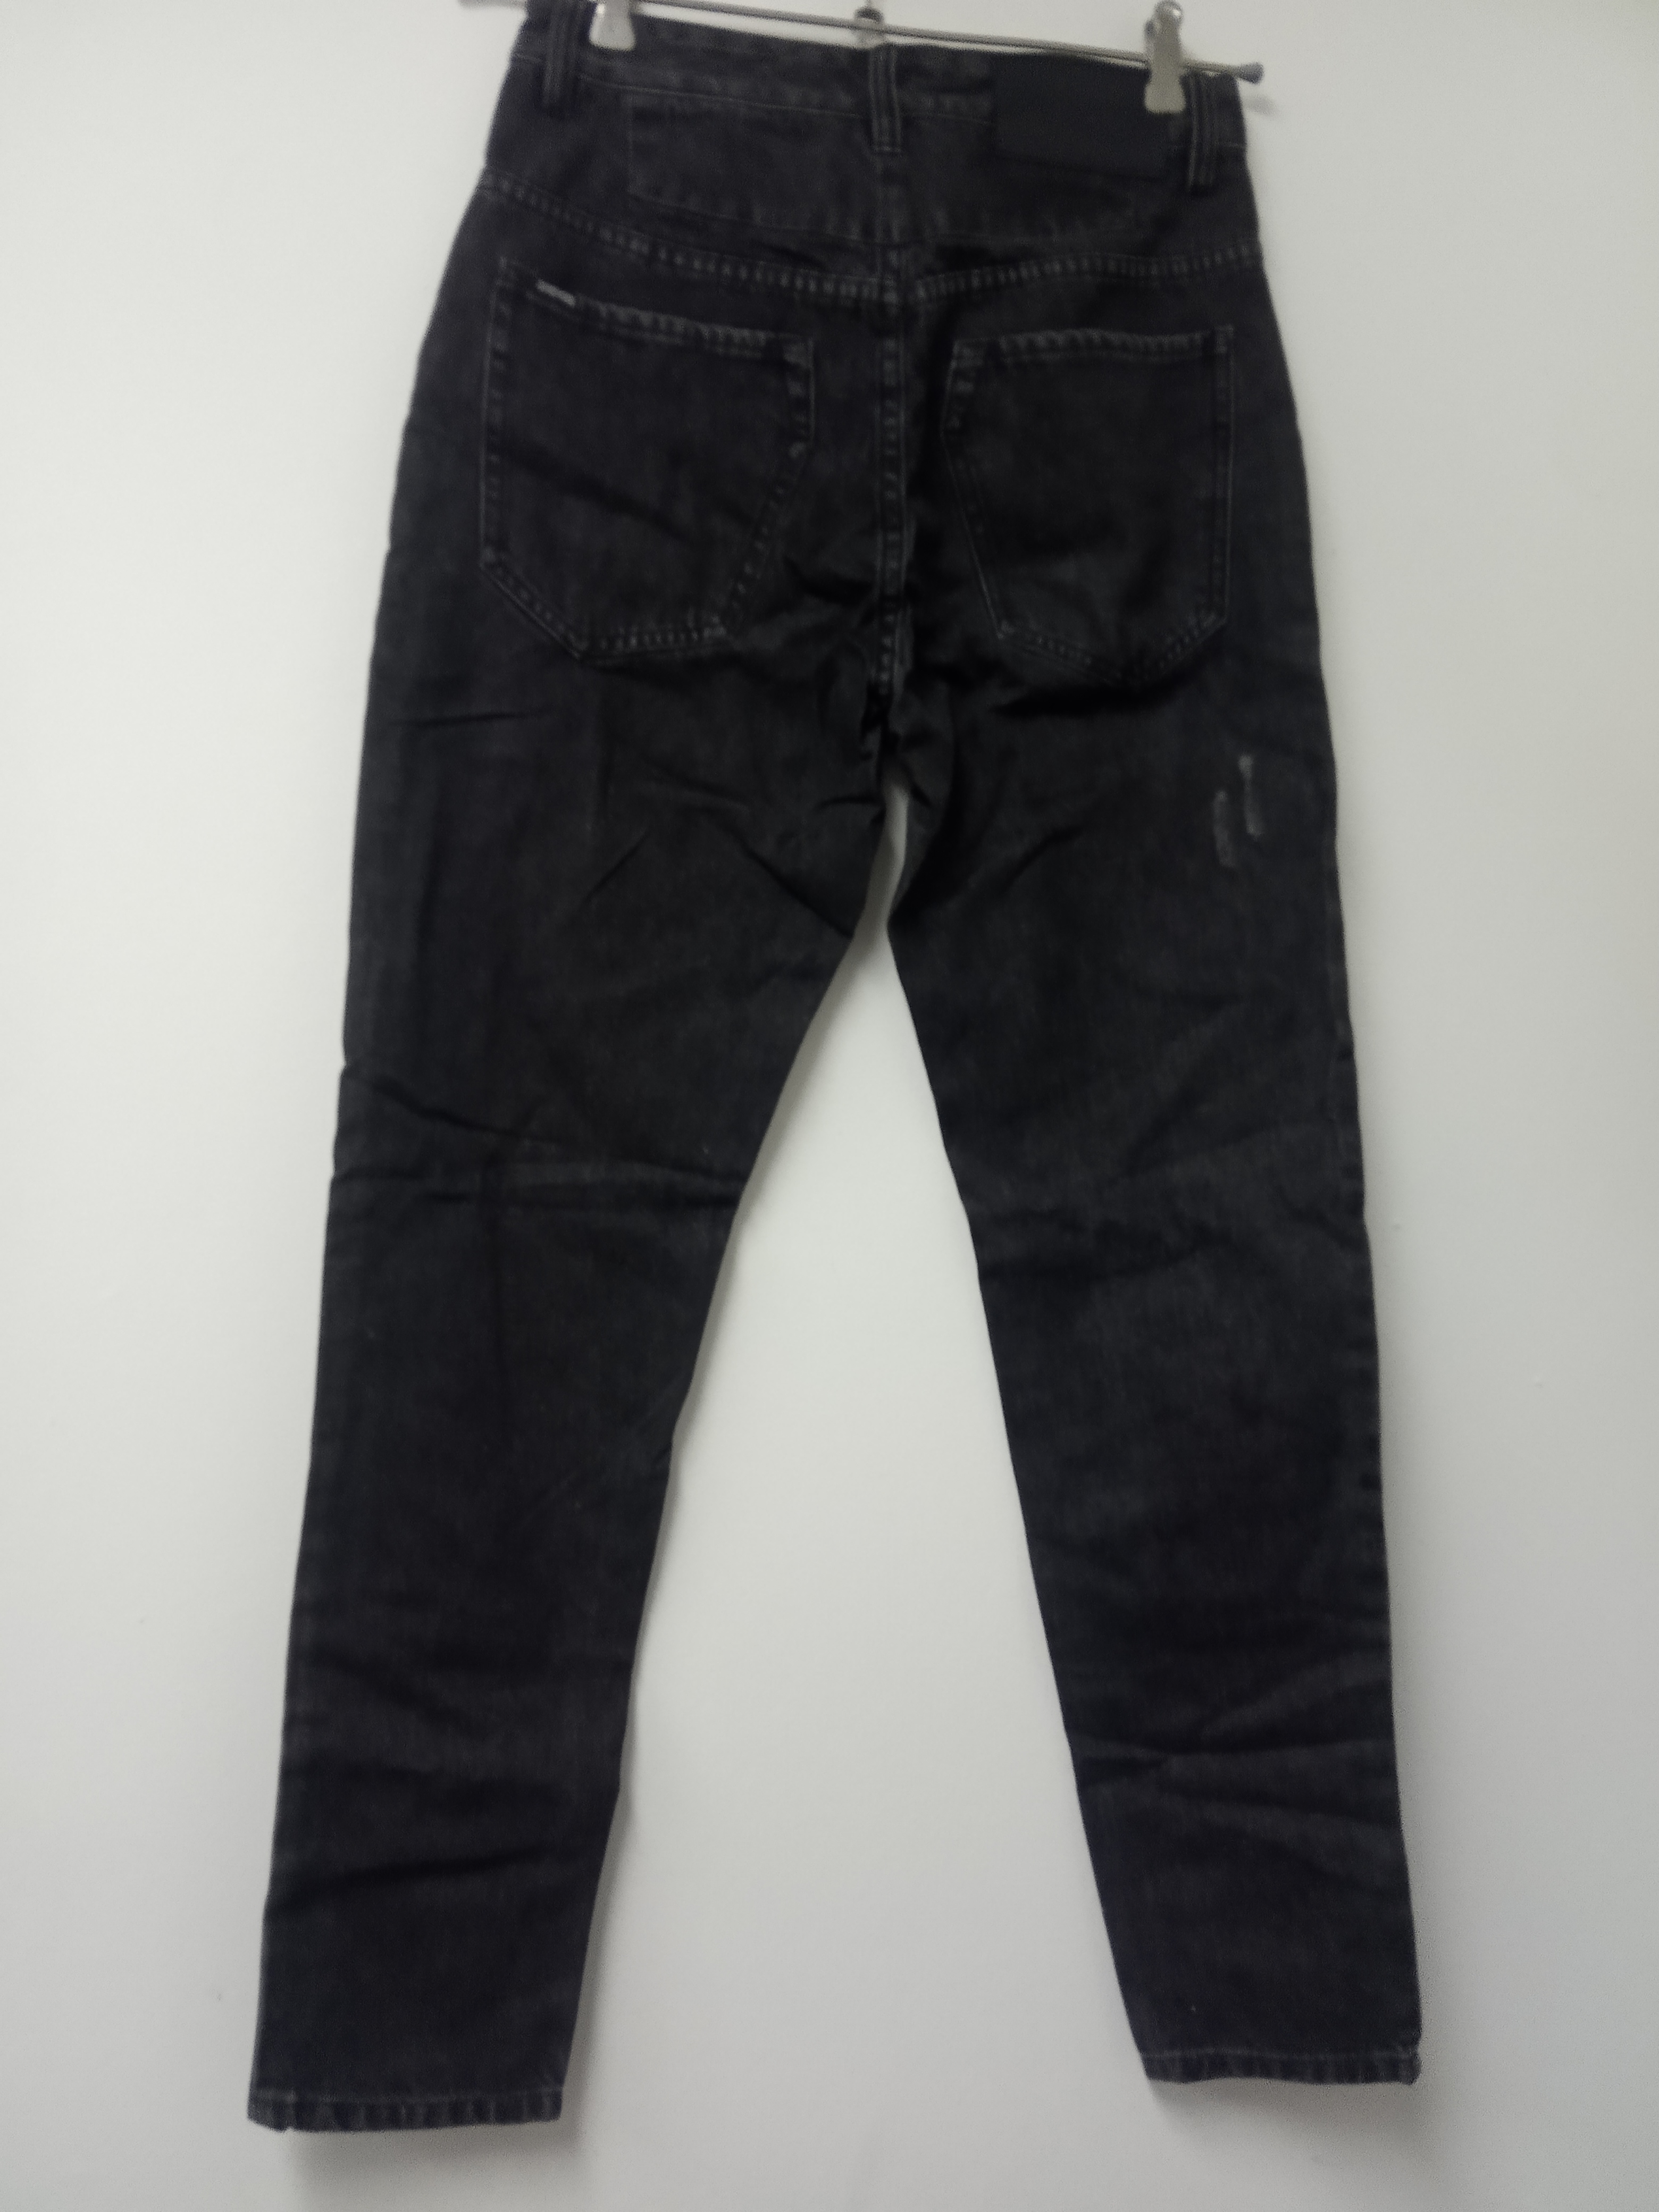 תמונה 8 ,ג'ינס zanrobe מידה 29 למכירה בתל אביב  ביגוד ואביזרים  ג'ינסים ומכנסיים